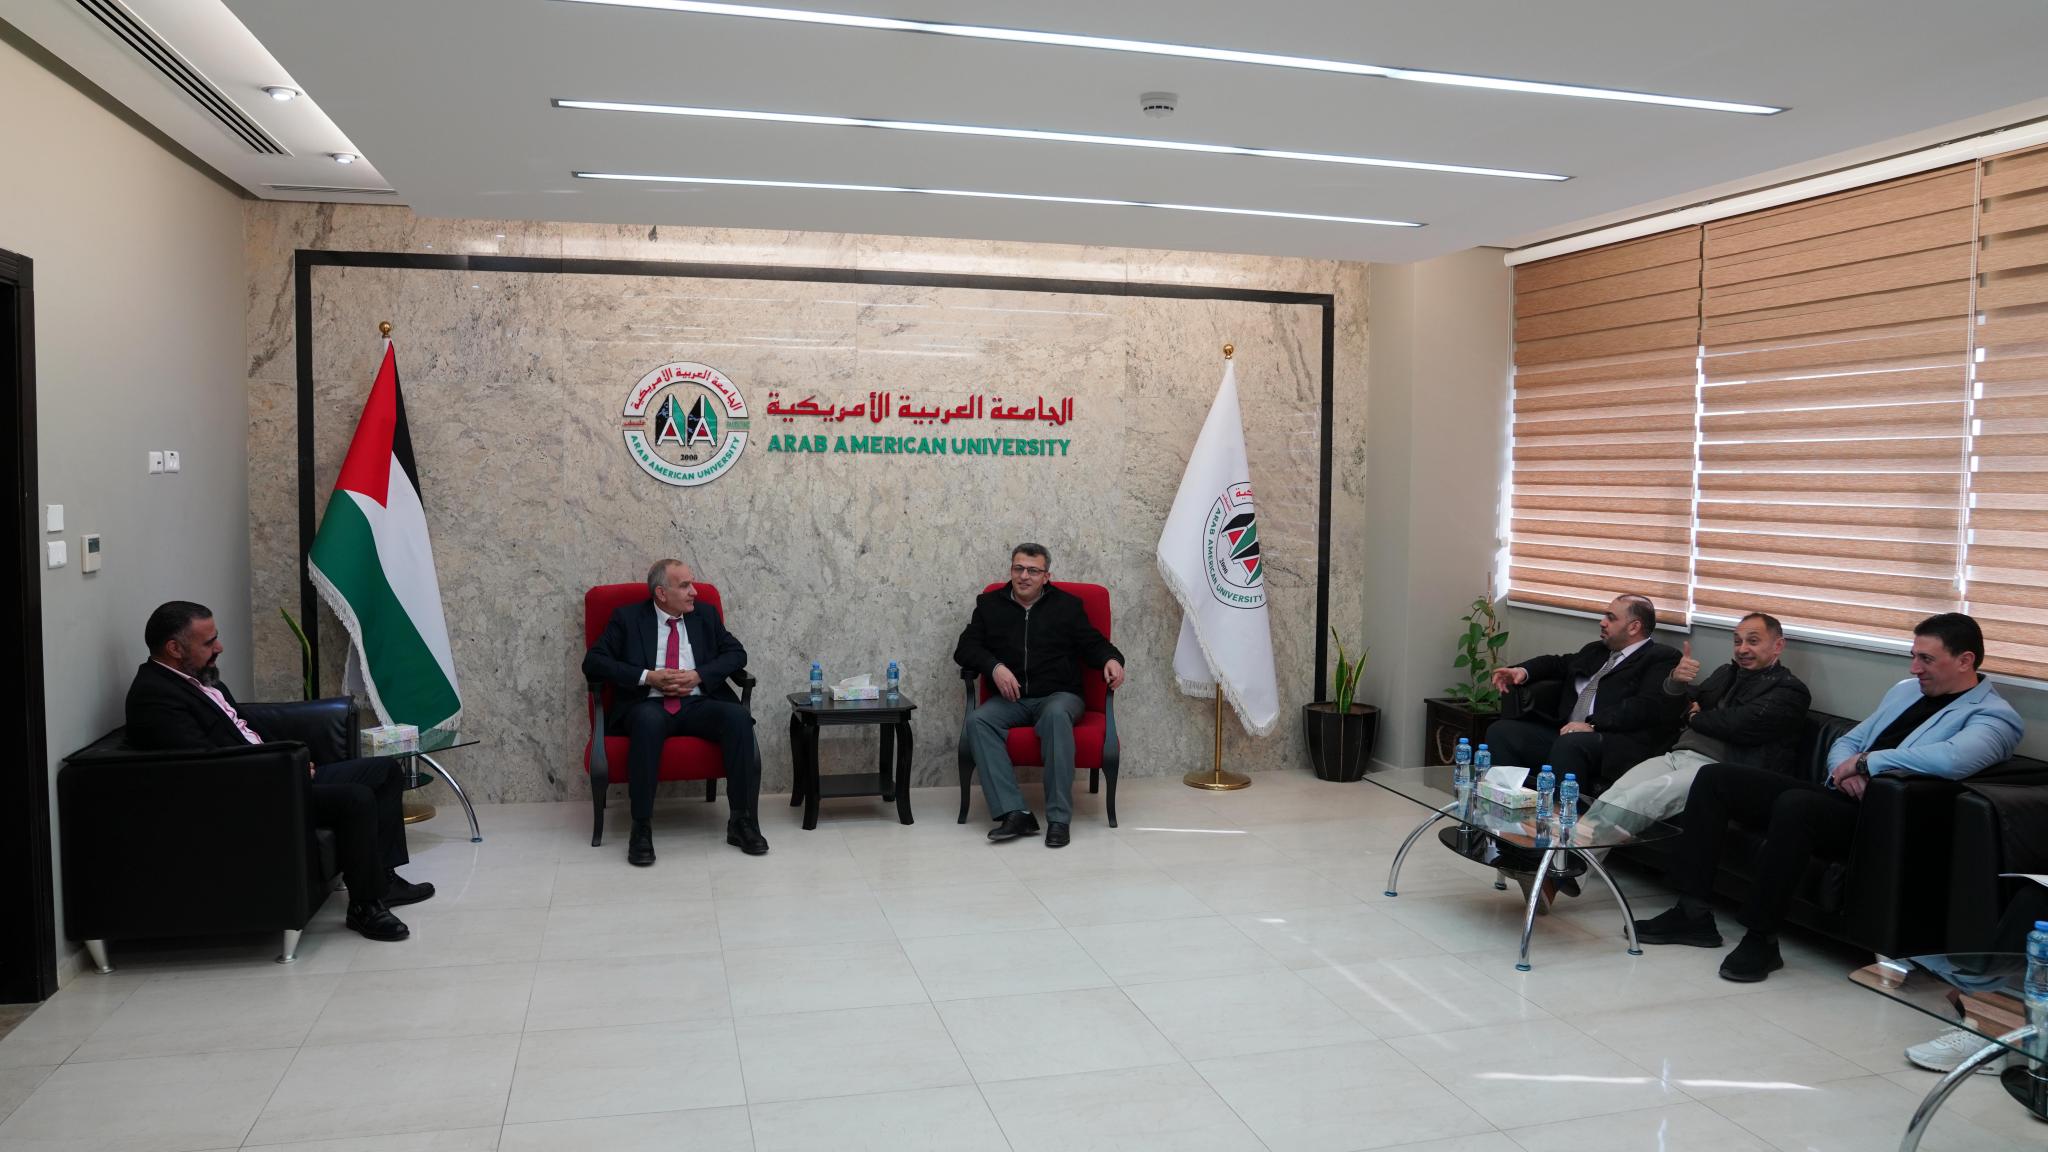 وزير الاتصالات وتكنولوجيا المعلومات يزور الجامعة العربية الامريكية ويتحدث عن التطور التكنولوجي في فلسطين